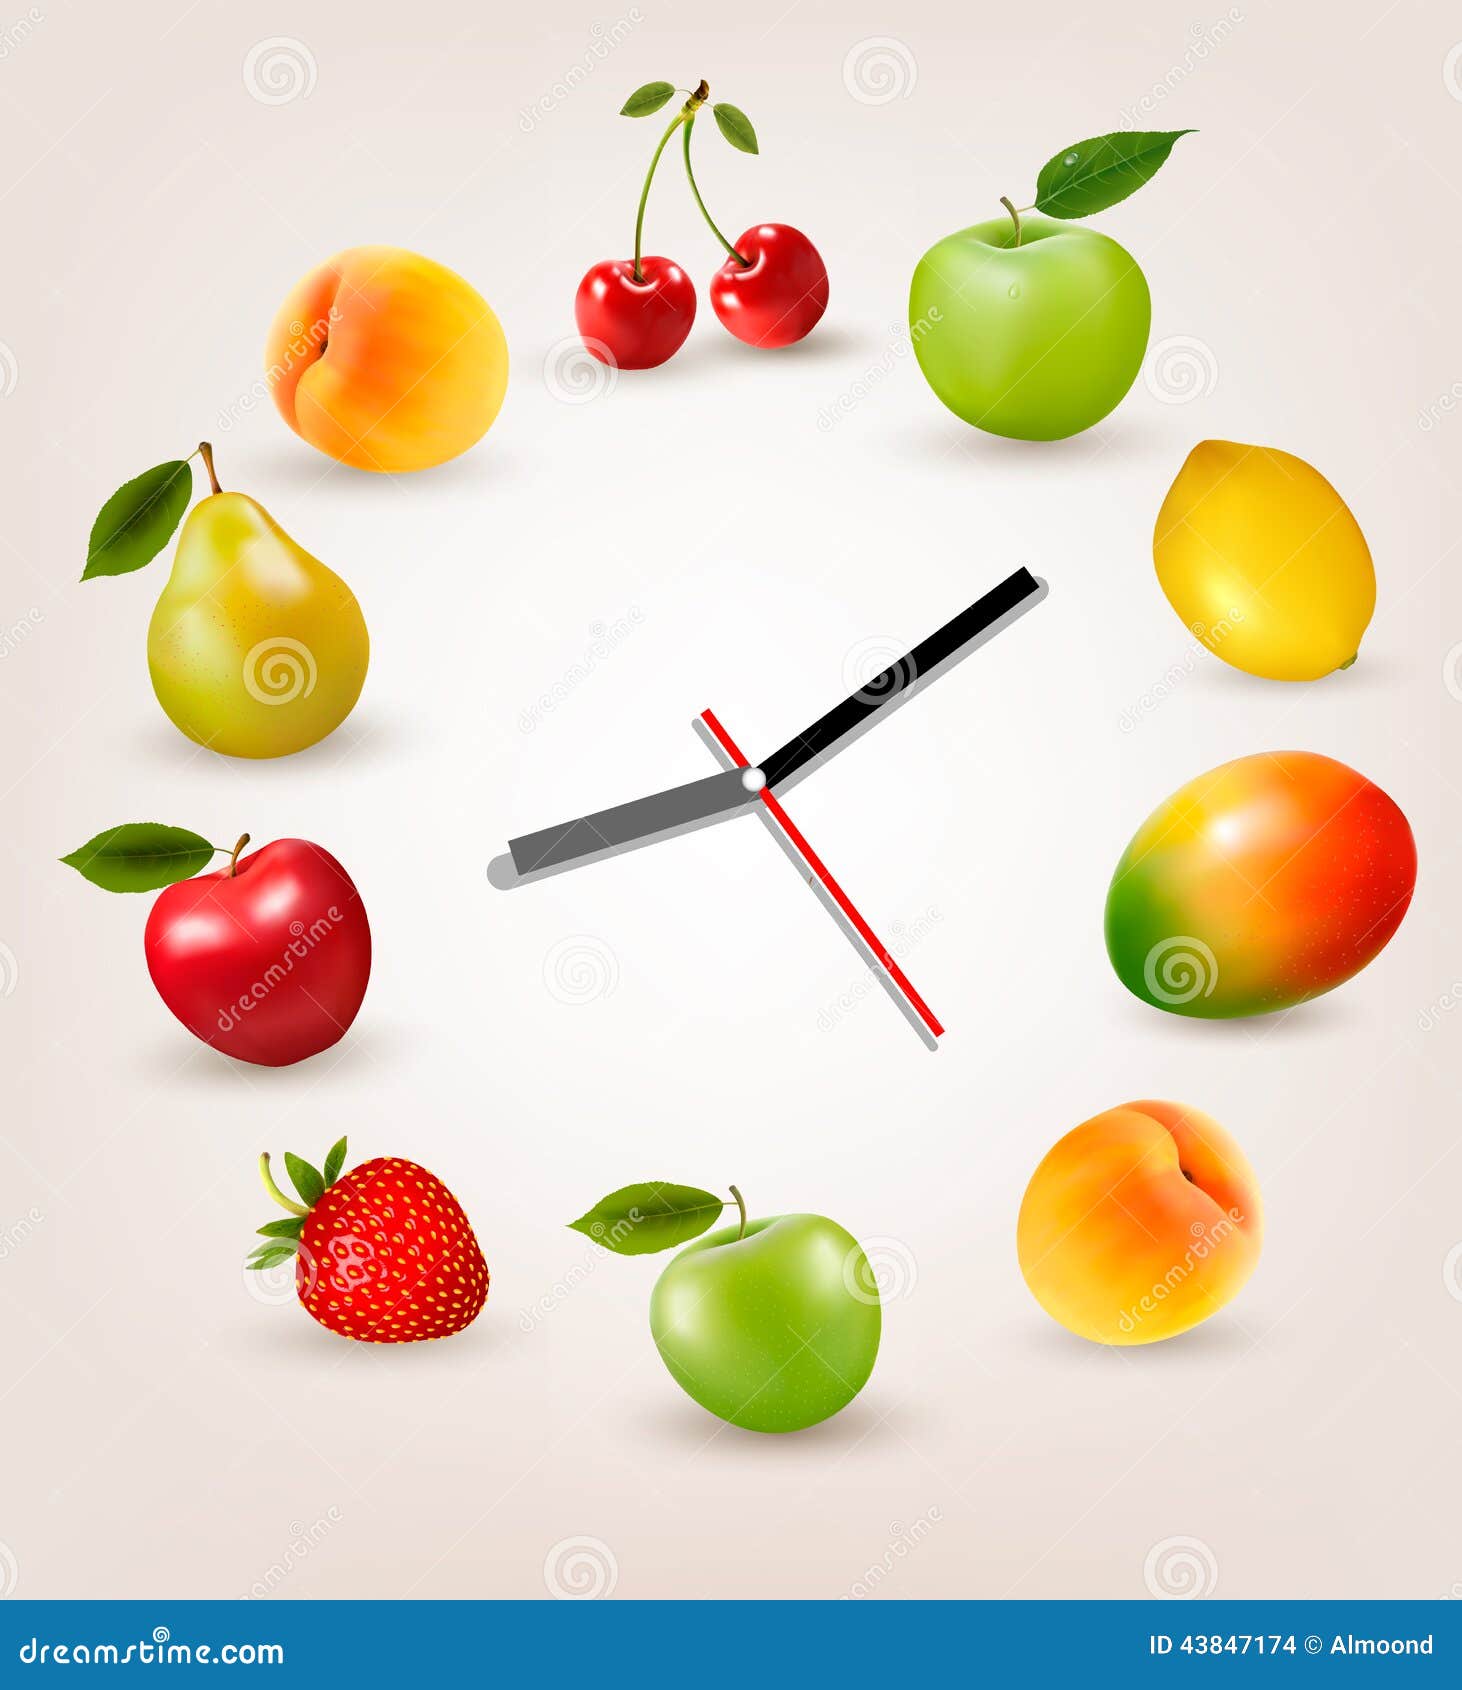 Фруктовый час. Часы с фруктами. Овощи фрукты вектор. Фрукт тайм. Рисунок на часах с фруктами.